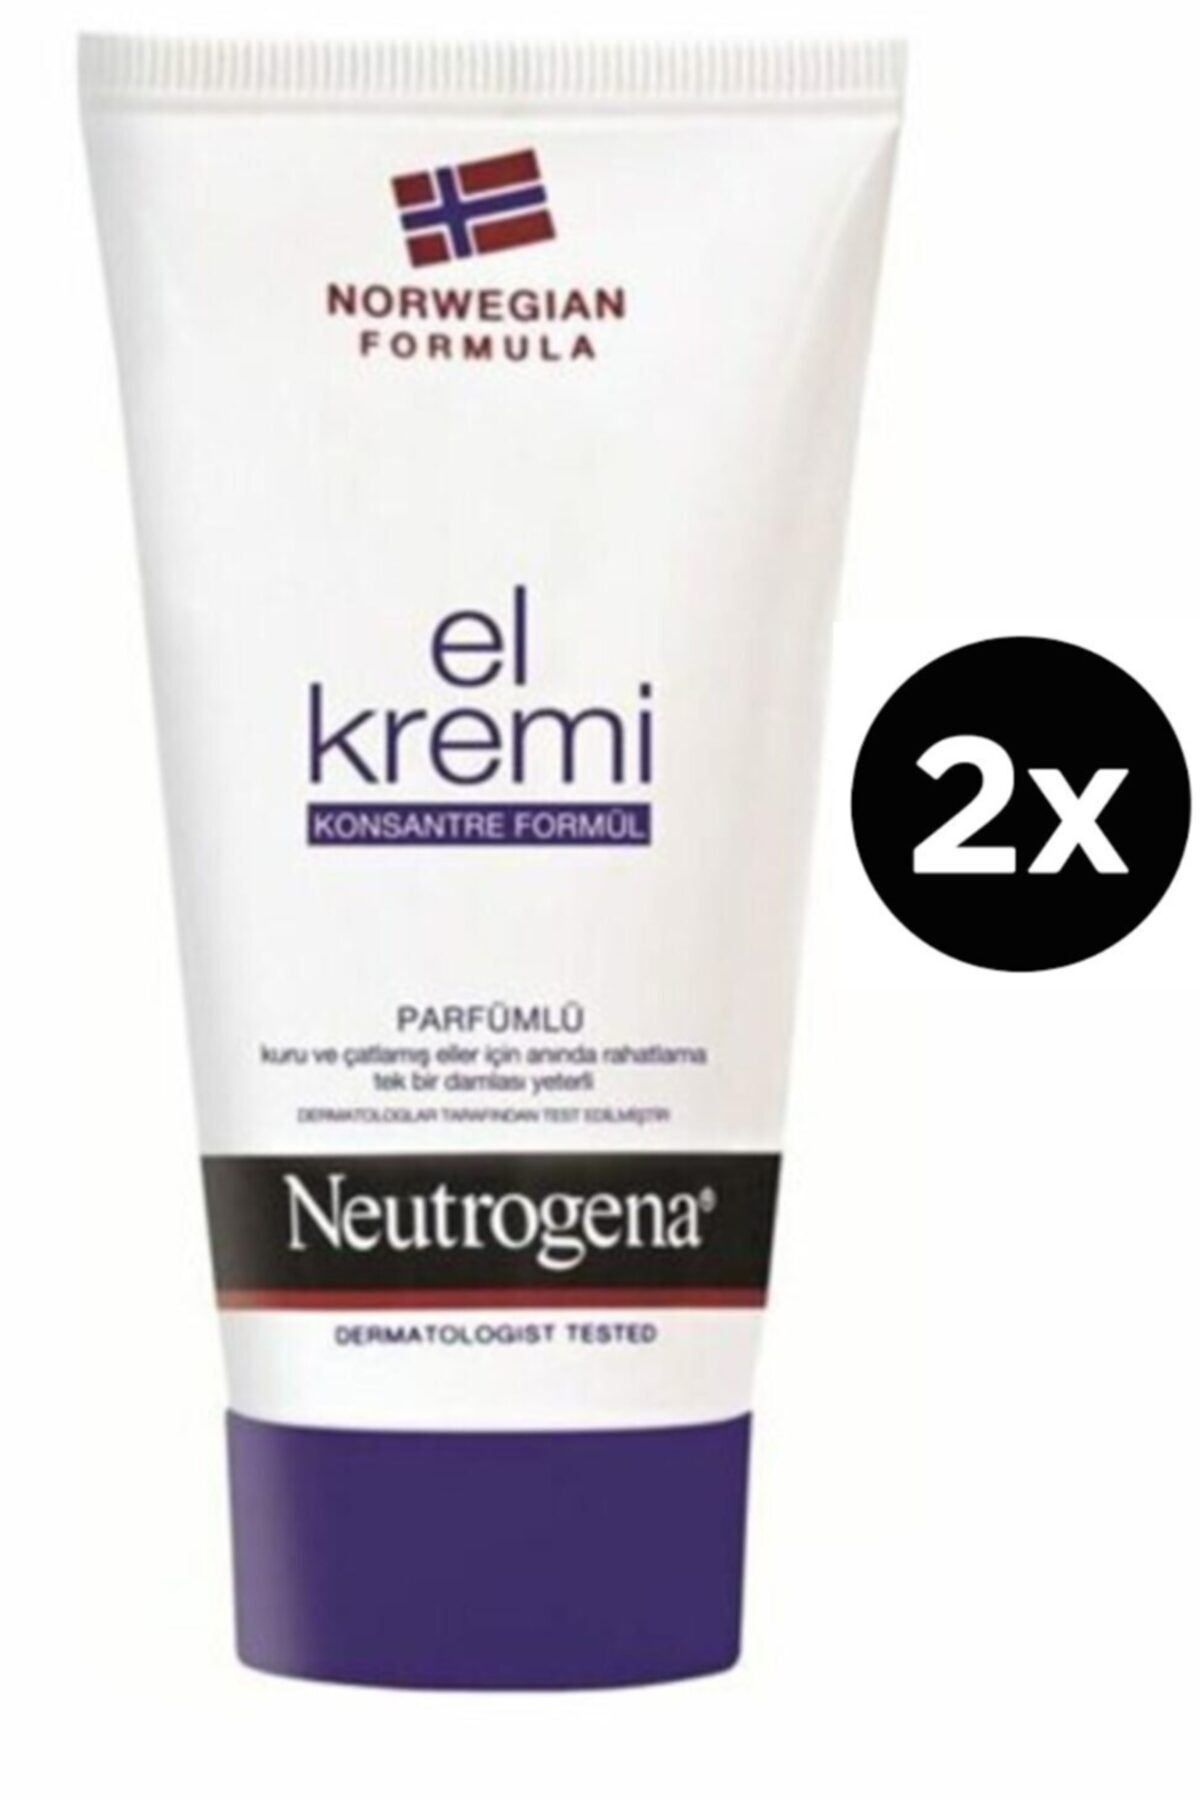 Neutrogena Parfümlü El Kremi 50 Ml 2 Adet